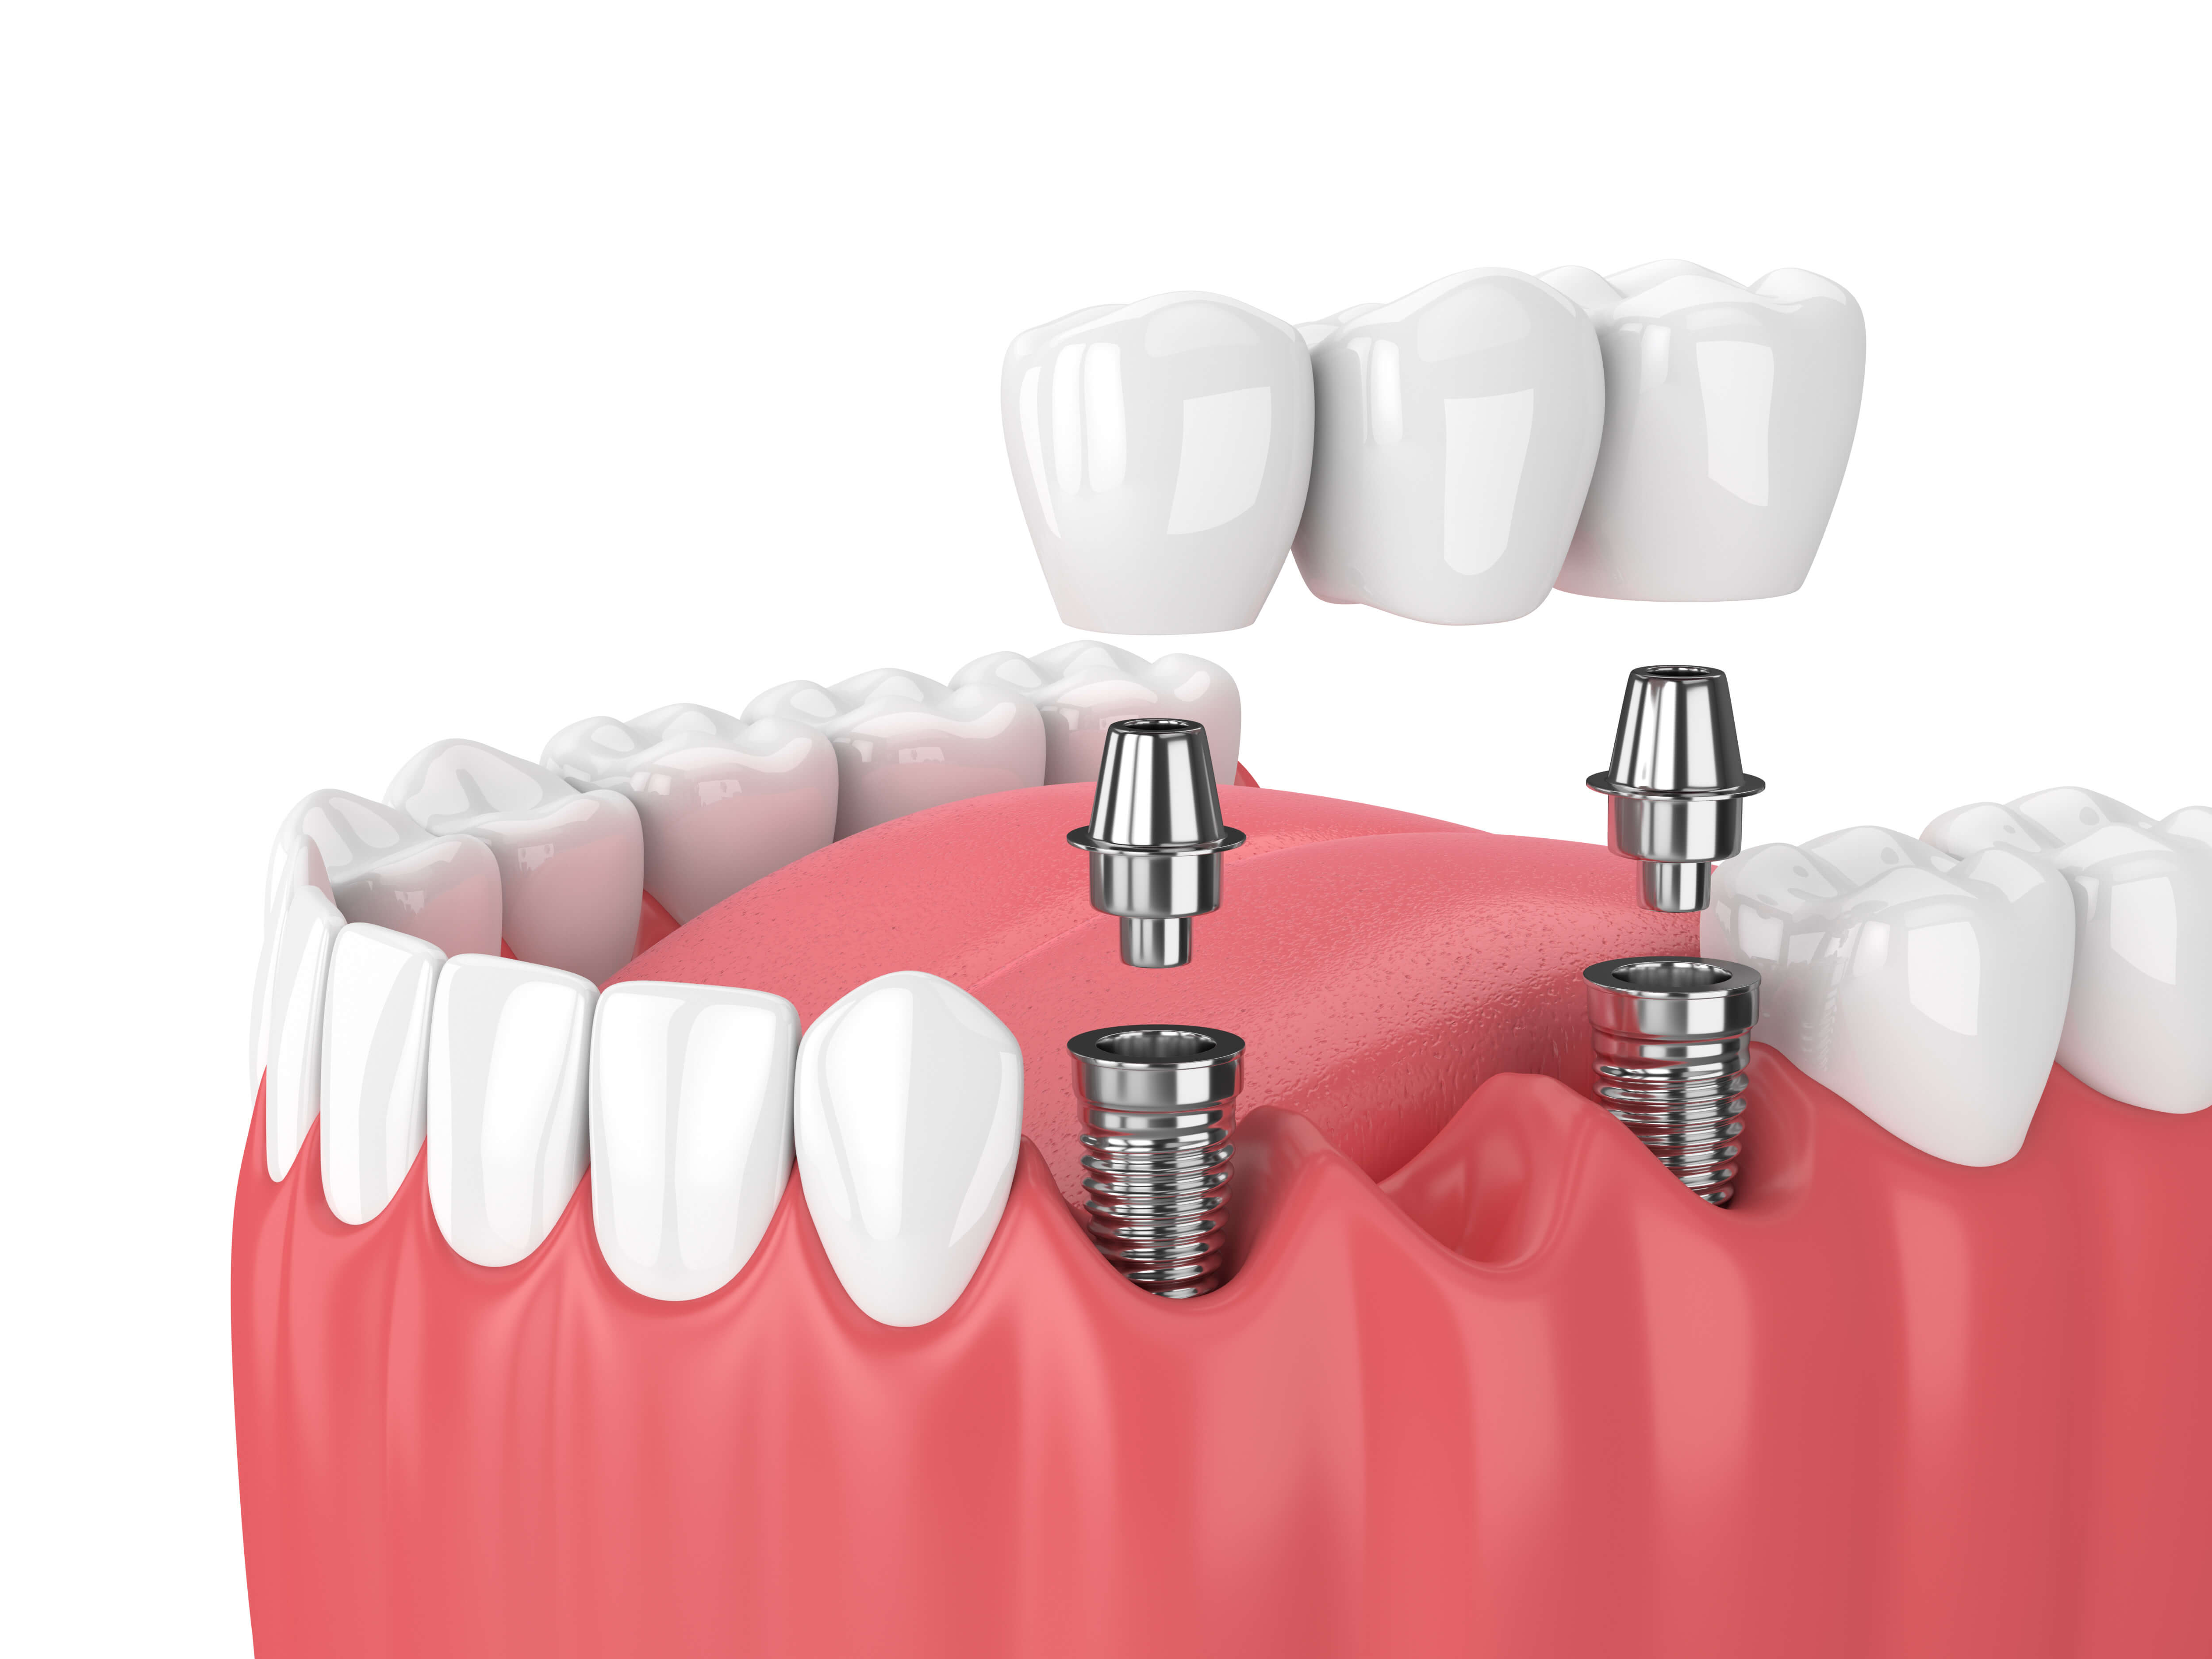 インプラントとご自身の歯を併用してブリッジ治療を選択することもできる